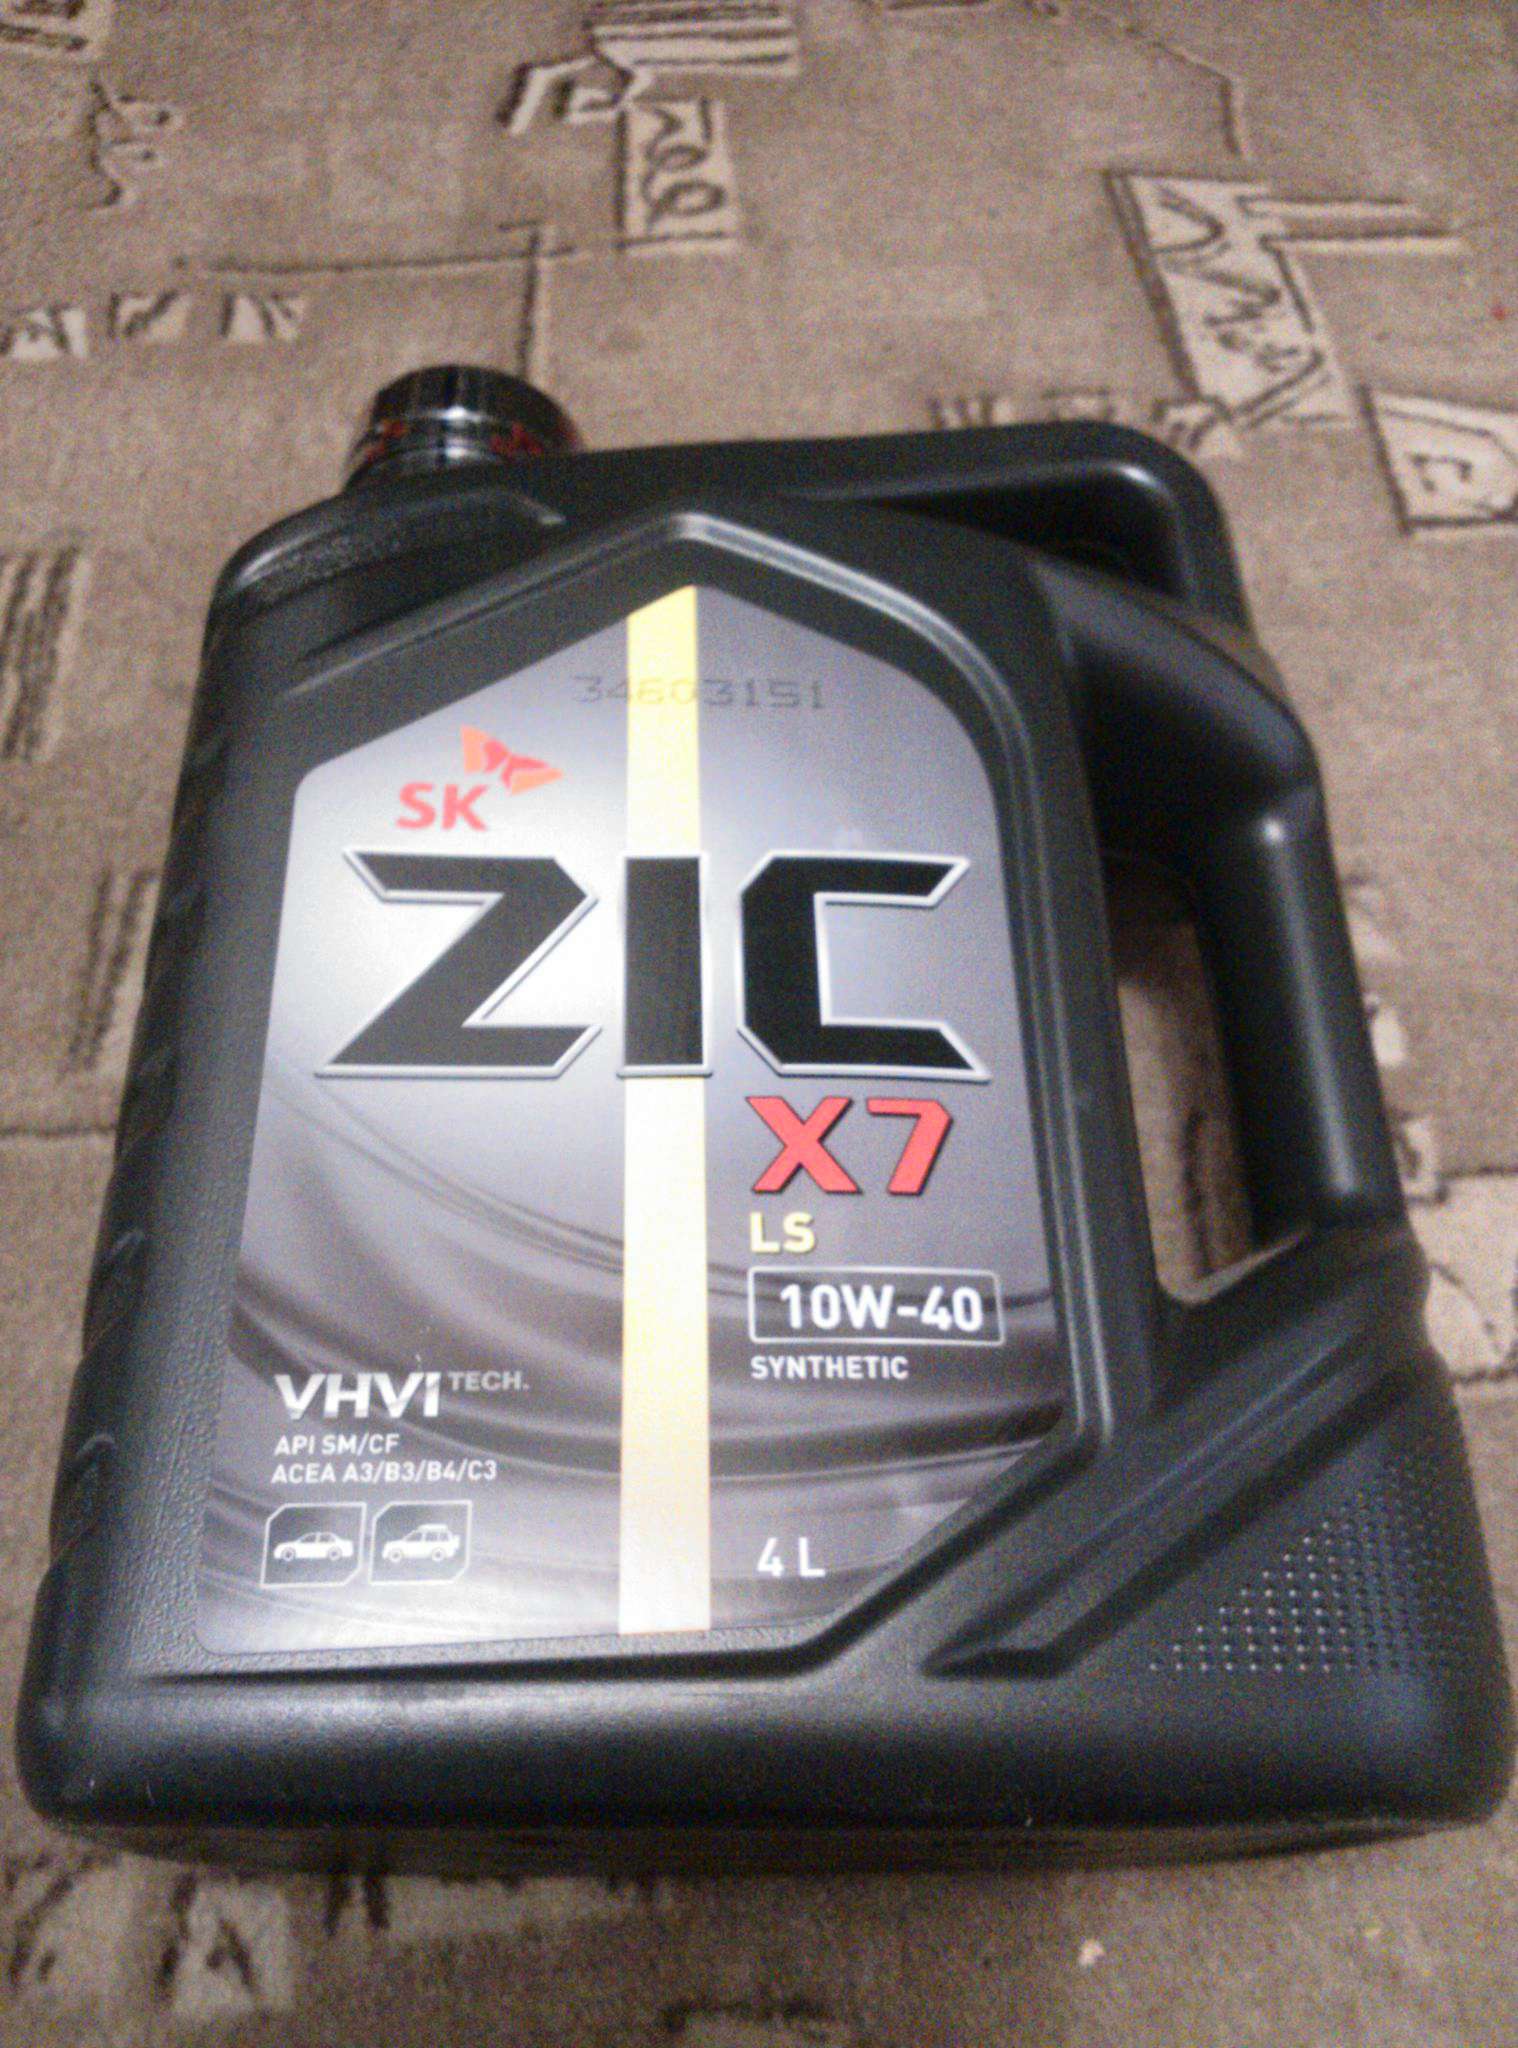 Zic x7 10w40. 162620 ZIC. ZIC x7 LS 10w40 4л (162620). Зик х7 10w-40. Масло моторное зик 10w 40 синтетика.